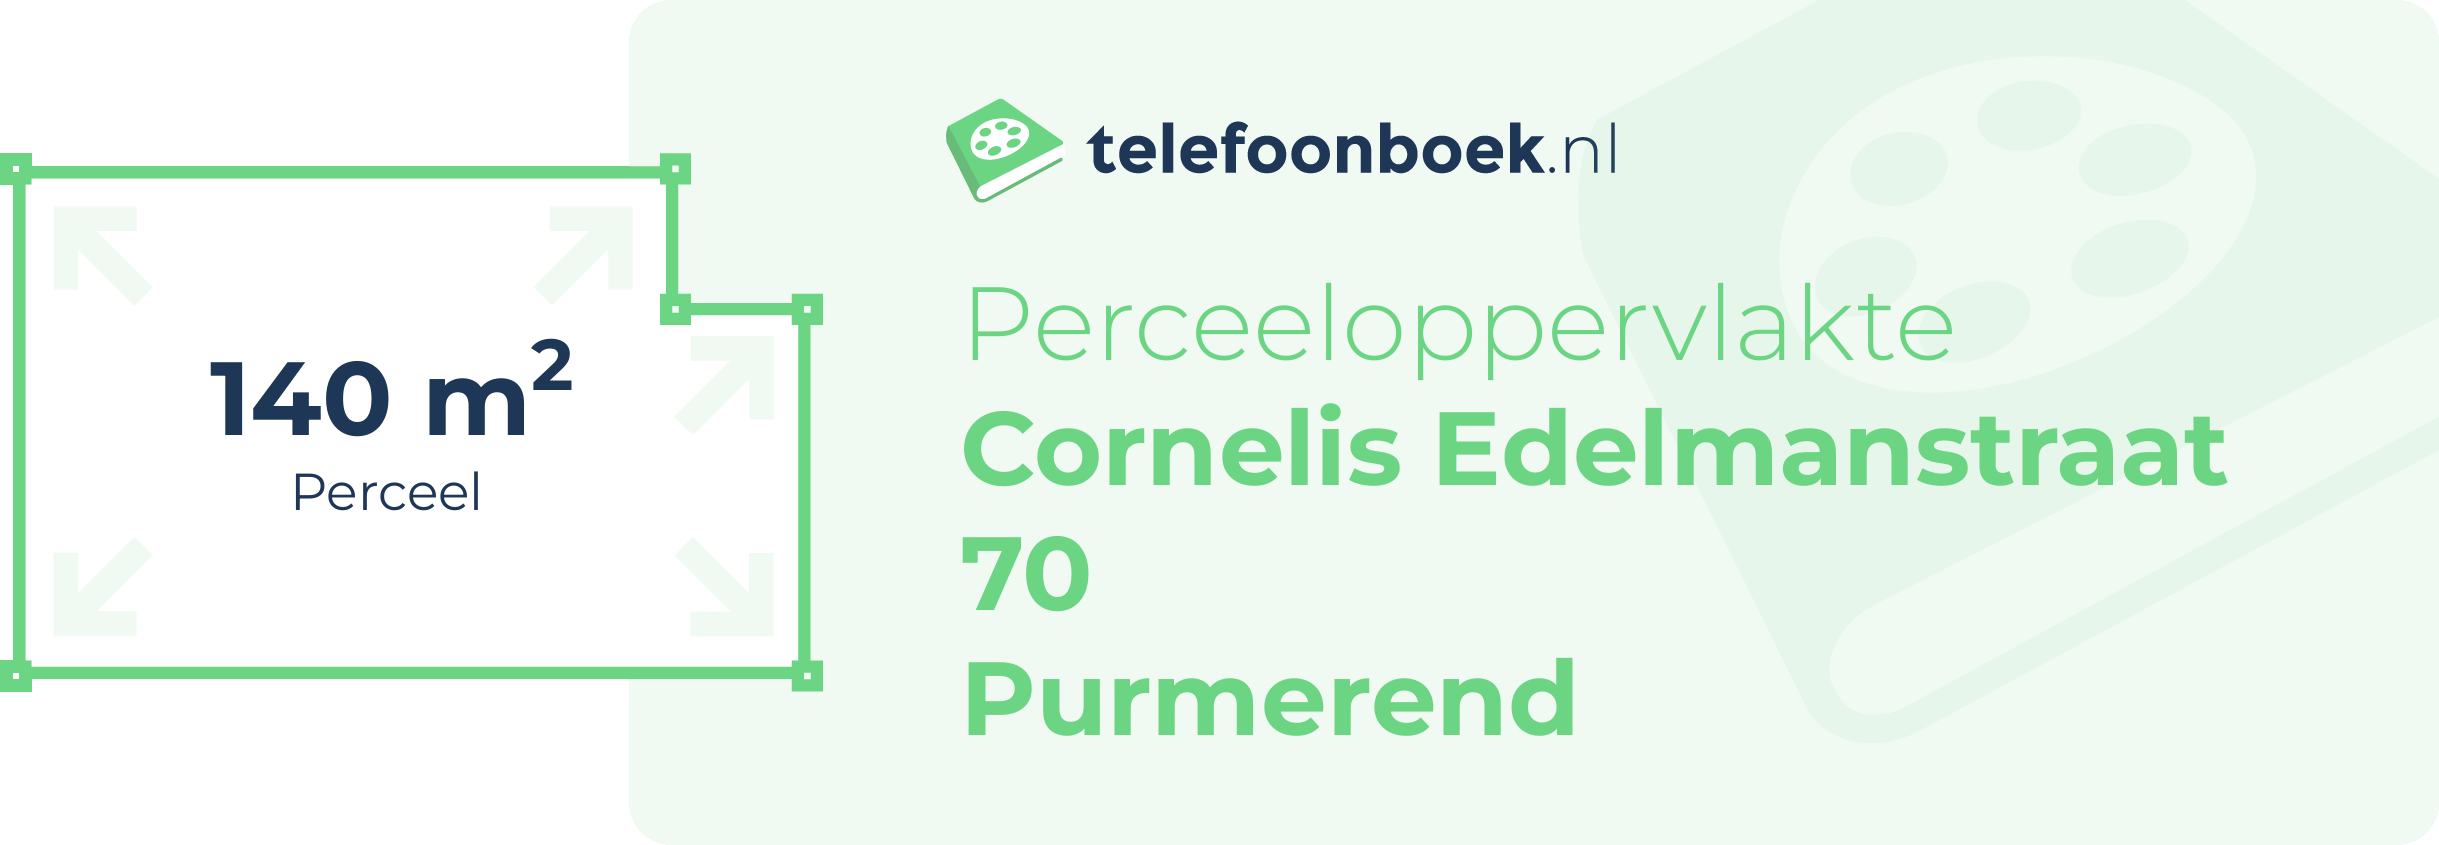 Perceeloppervlakte Cornelis Edelmanstraat 70 Purmerend